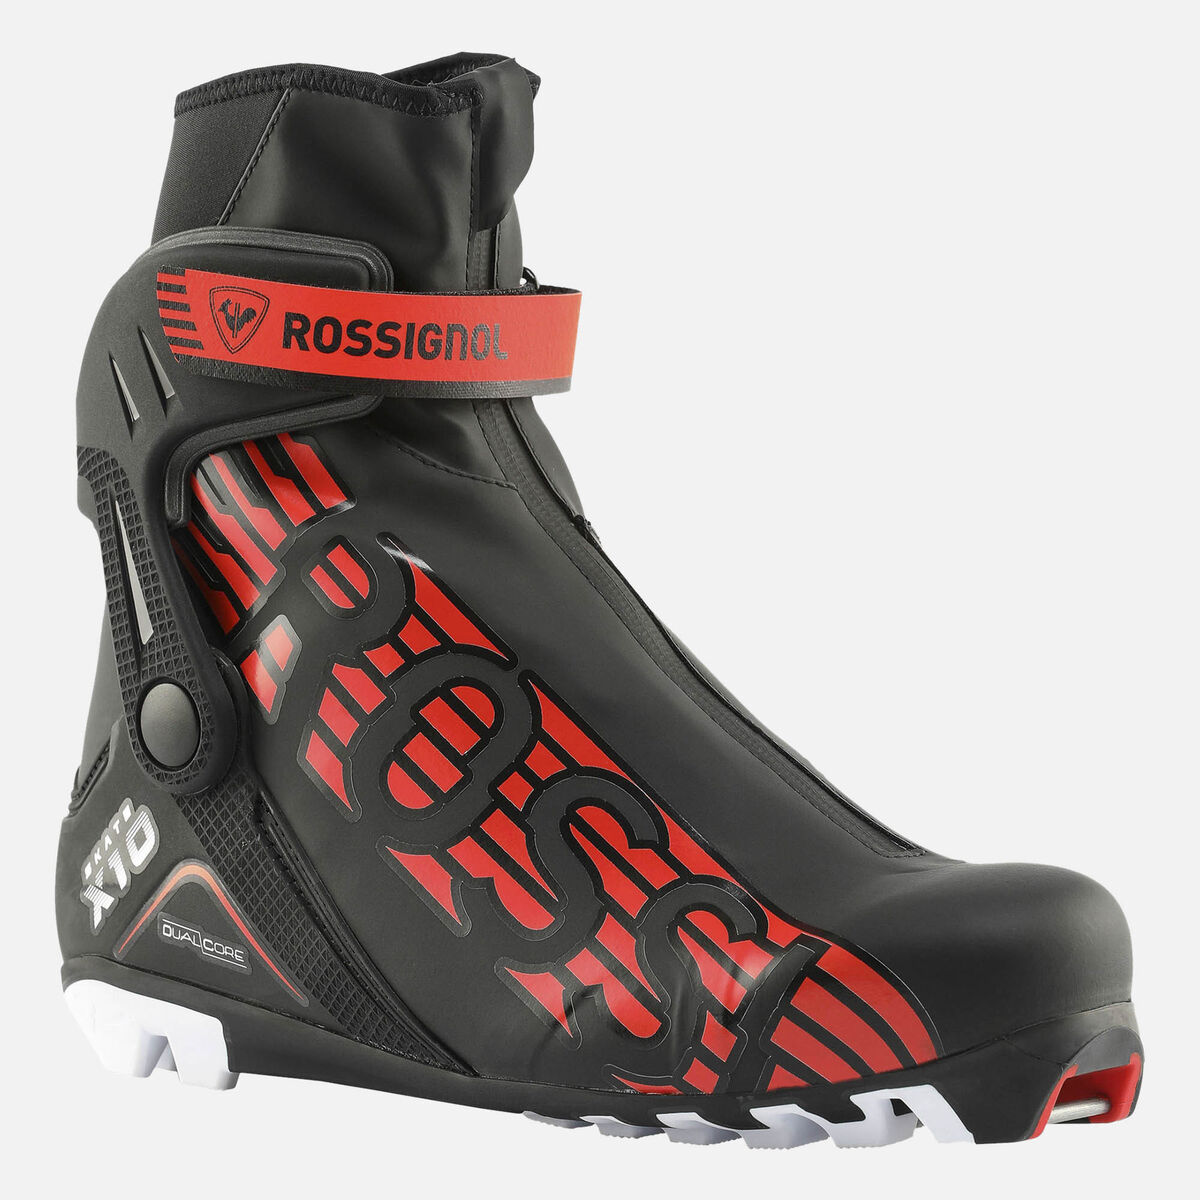 Chaussures de ski nordique Racing Homme X-10 Skate